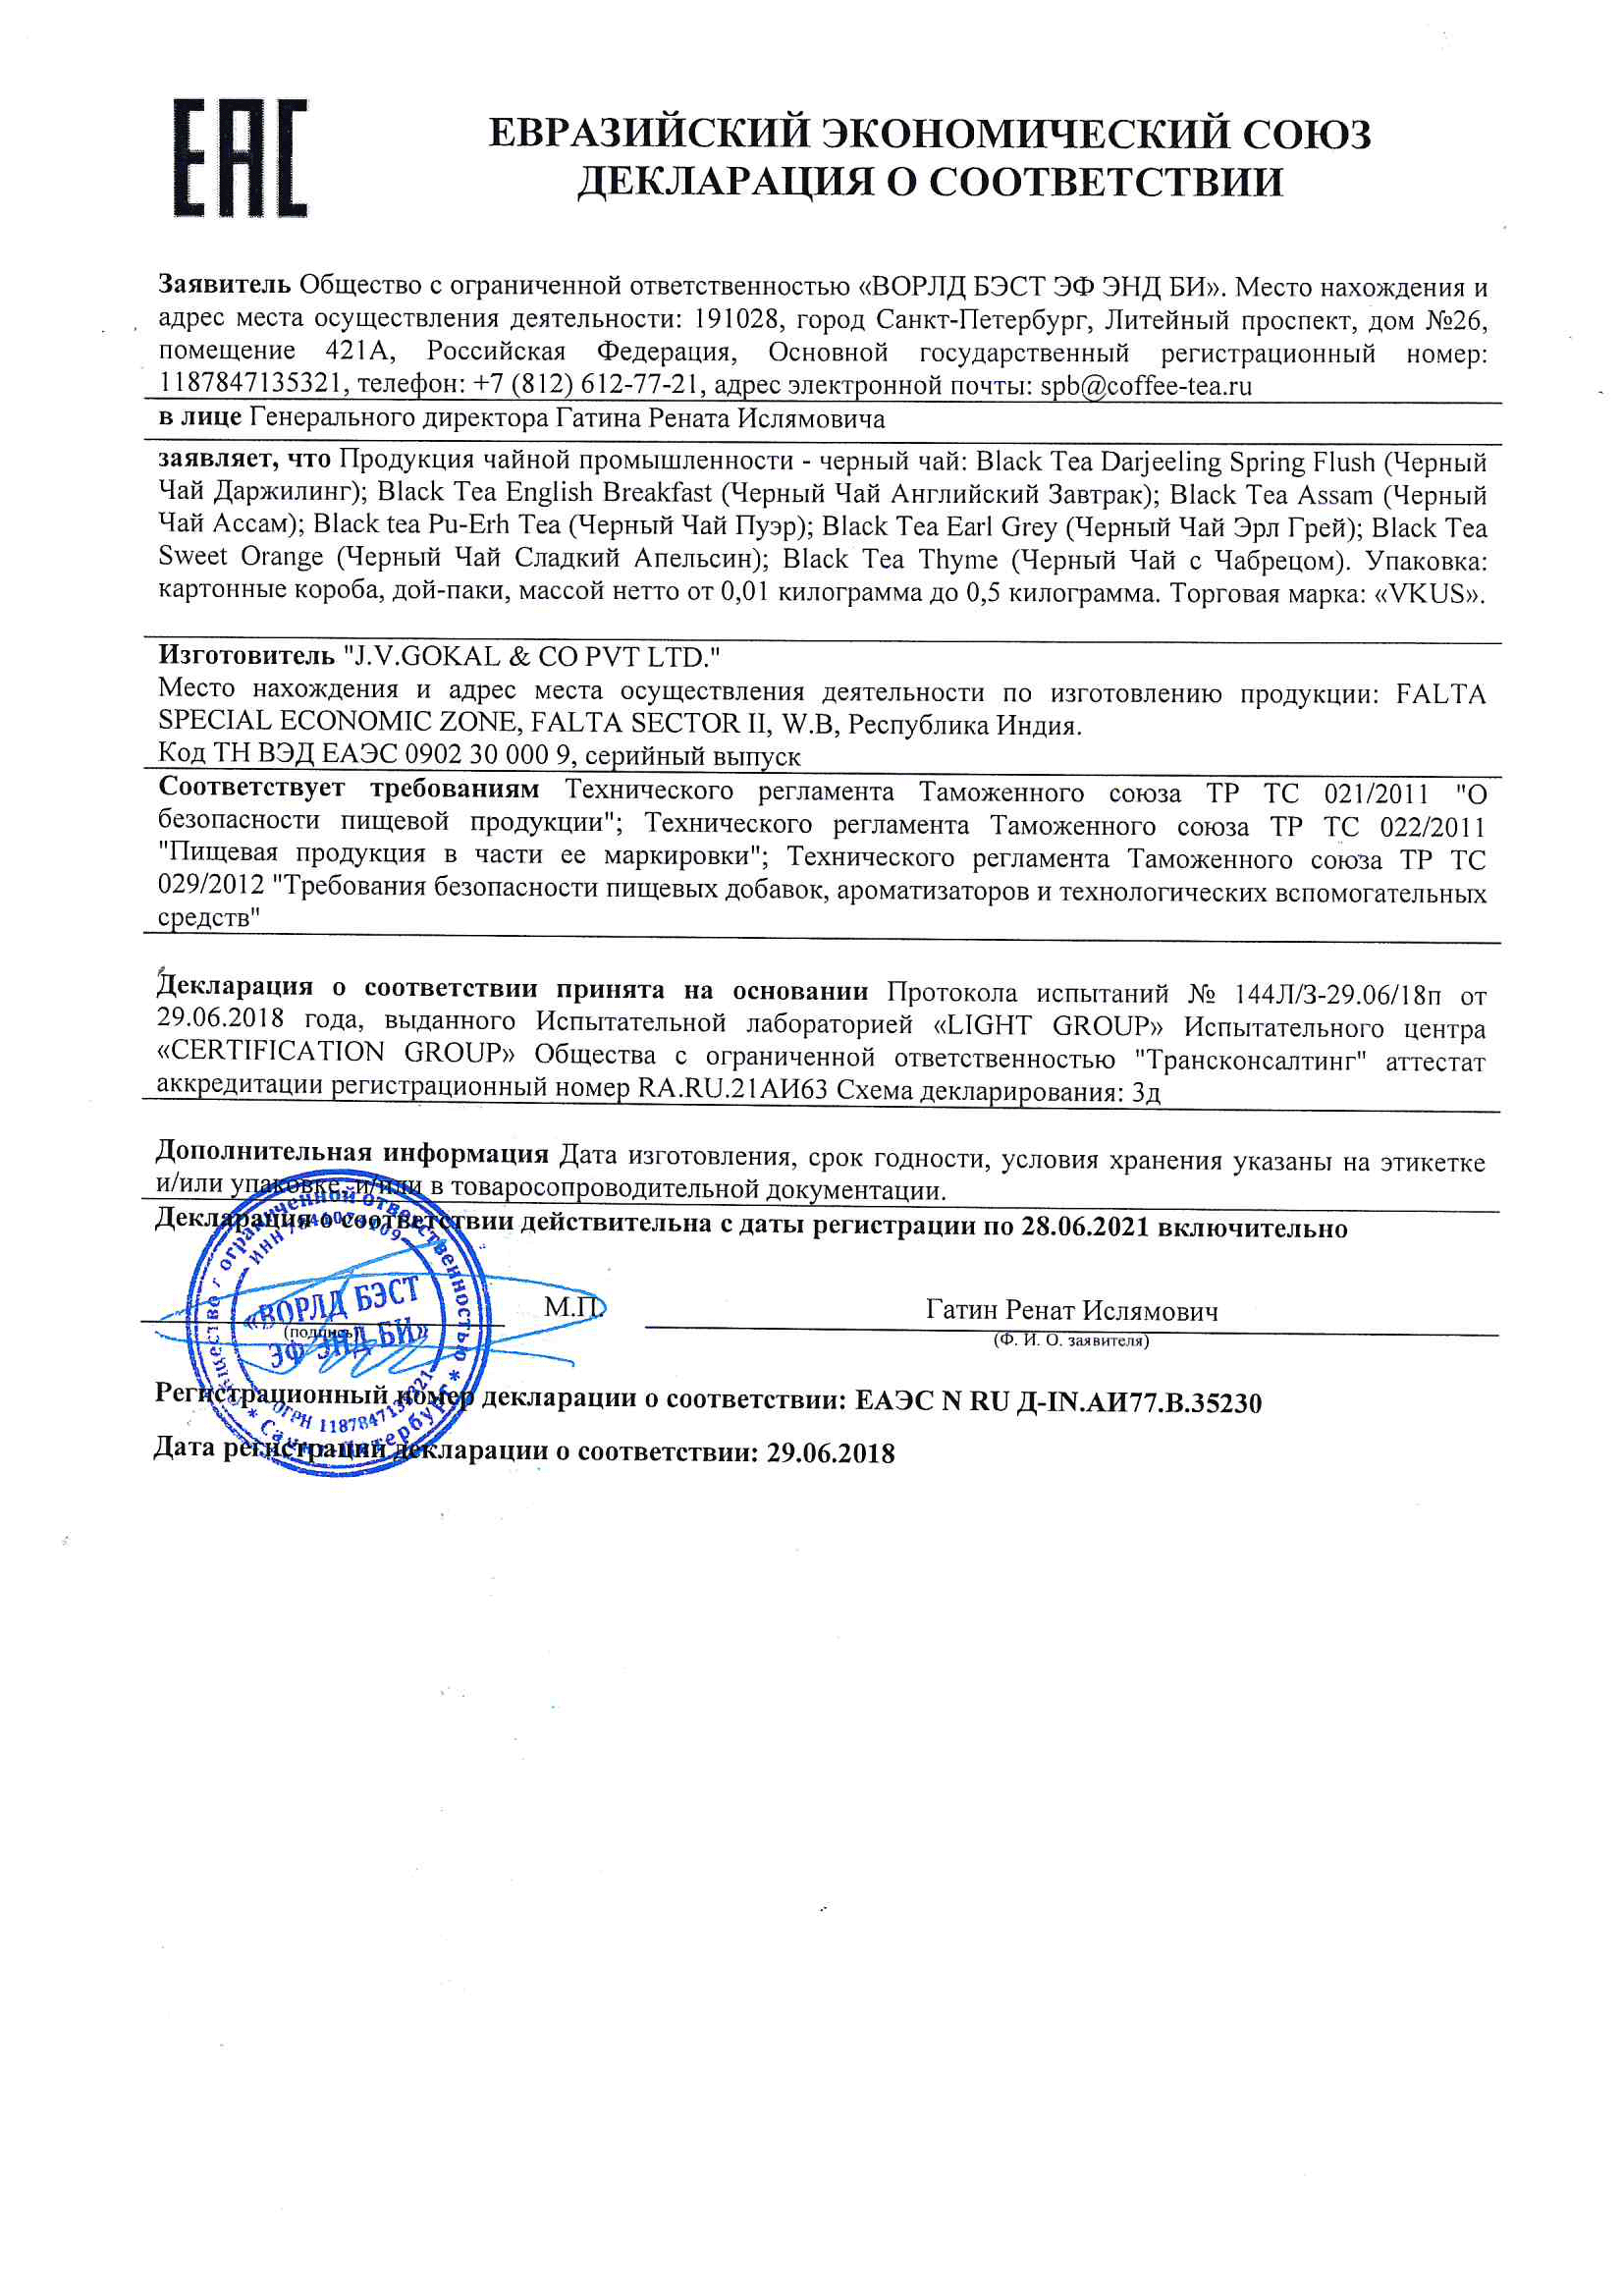 Чай VKUS черный до 28.06.2021.pdf